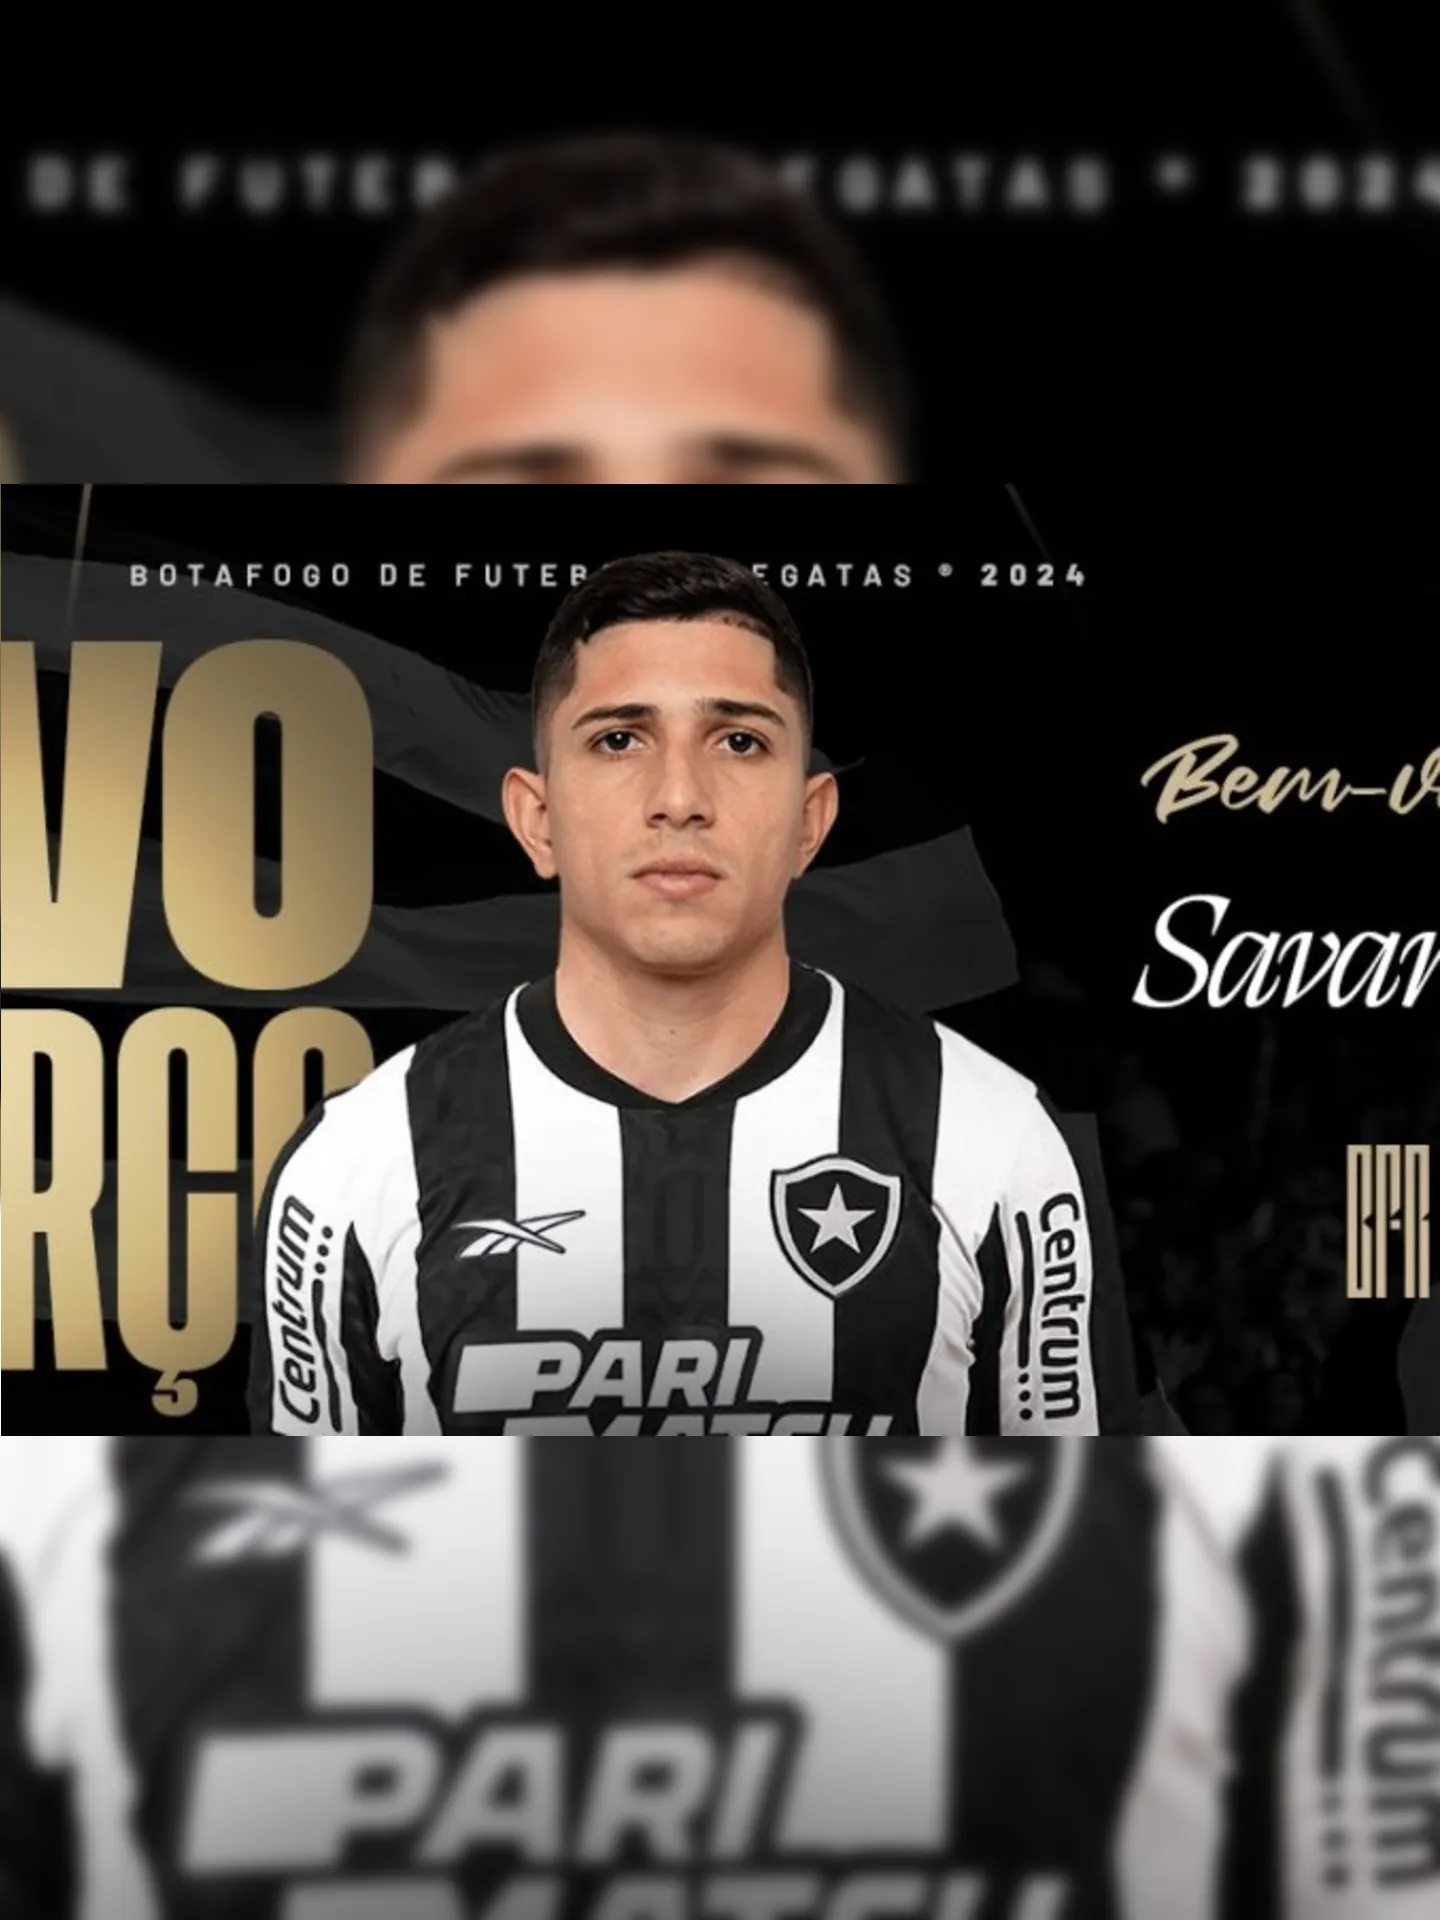 Savarino assinou contrato de três anos com o Botafogo